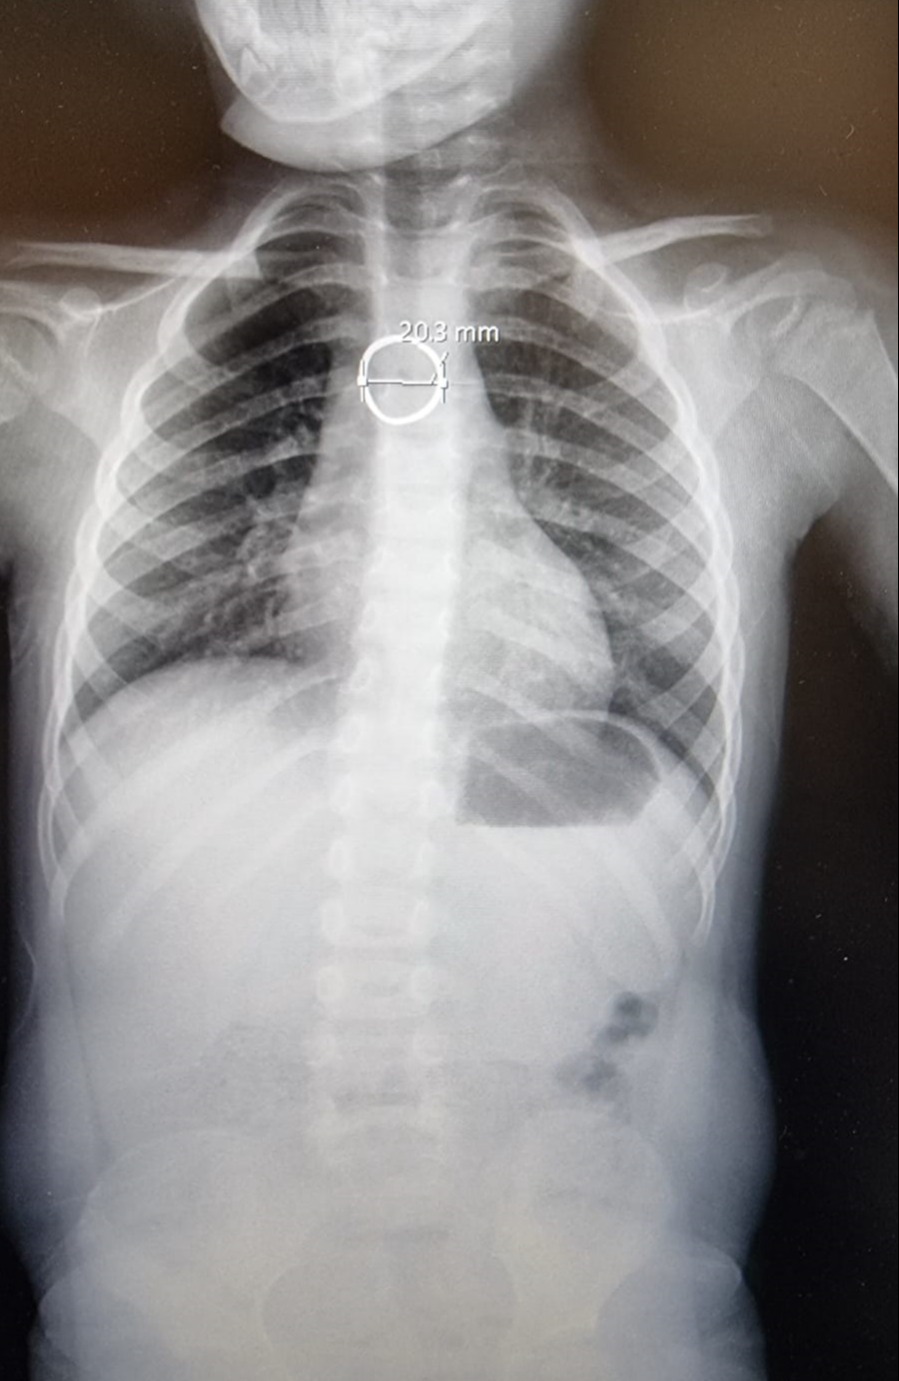 צילום הרנטגן של הטבעת בגוף הילדה